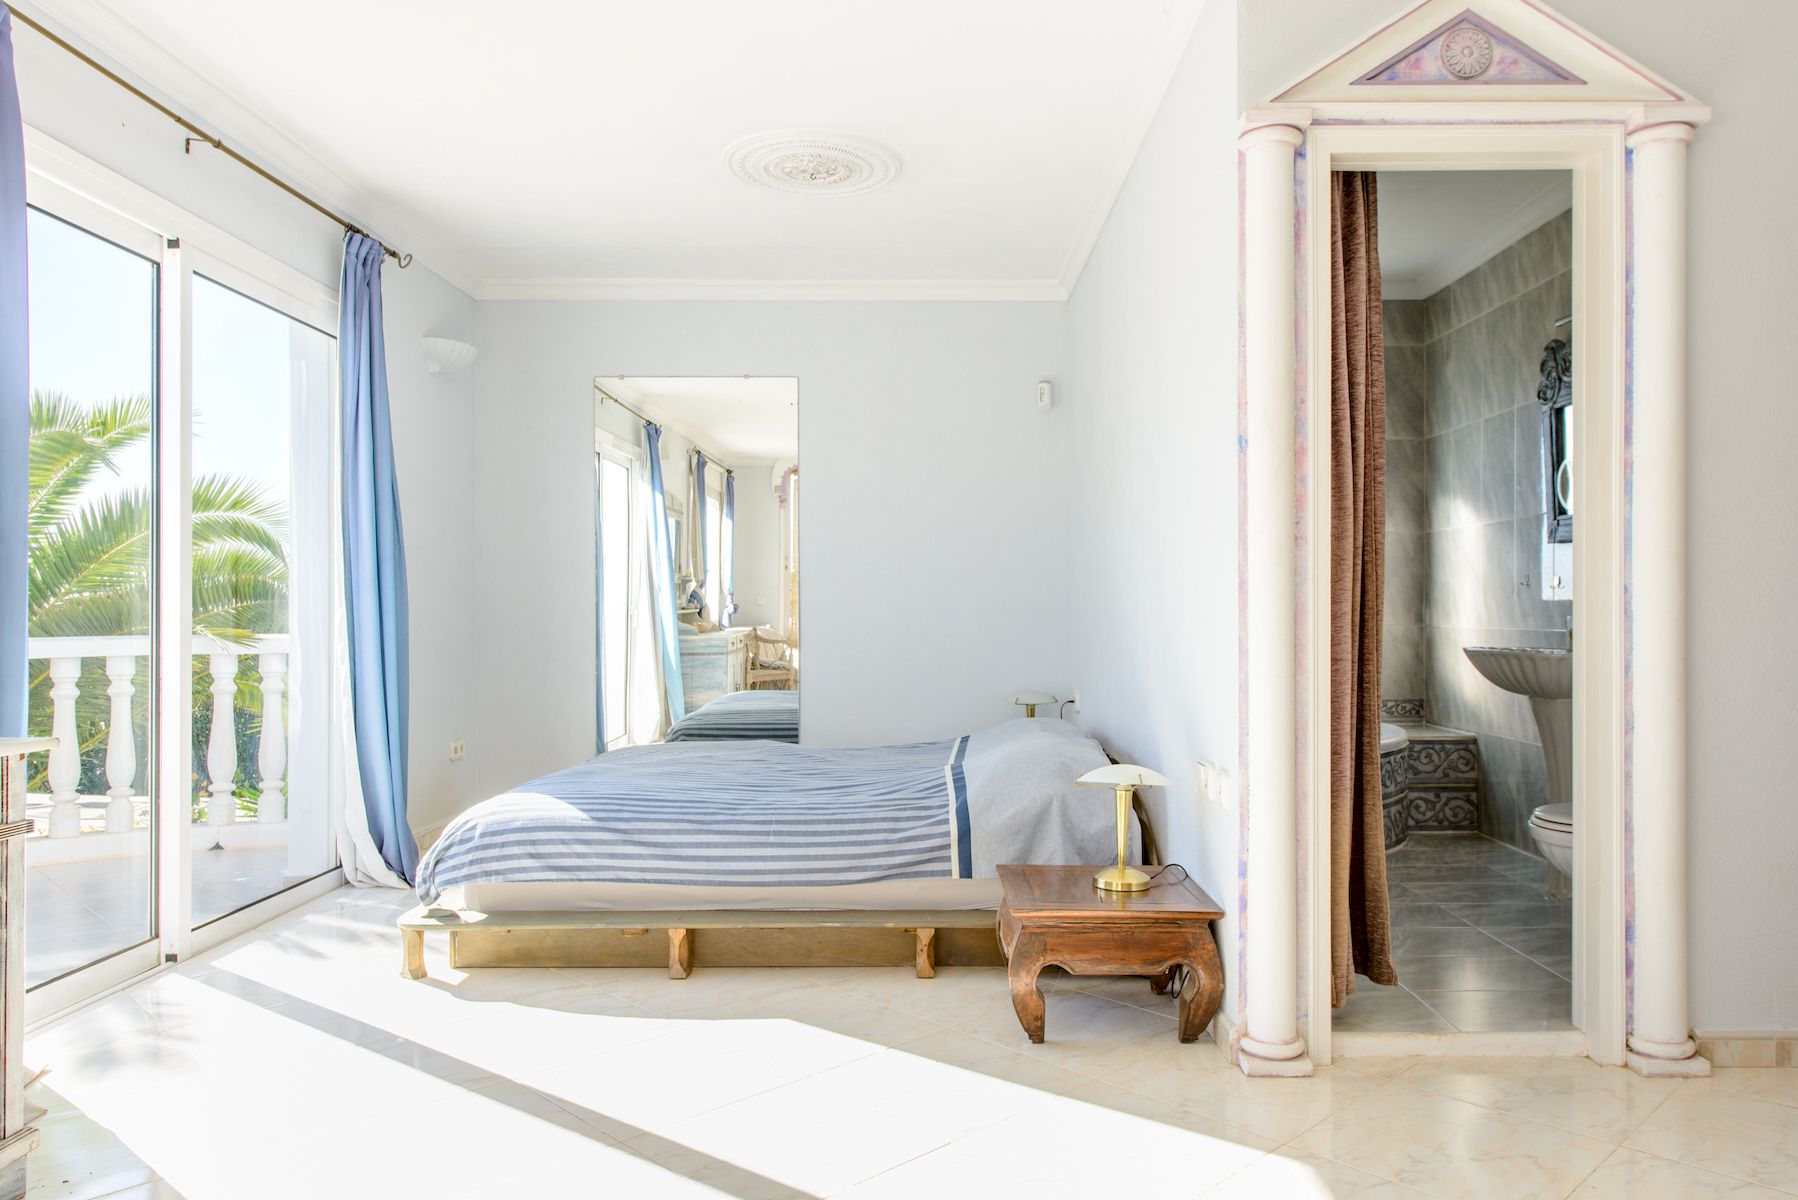 Luxe Arabische stijl villa te koop in Ibiza met uitzicht op zee